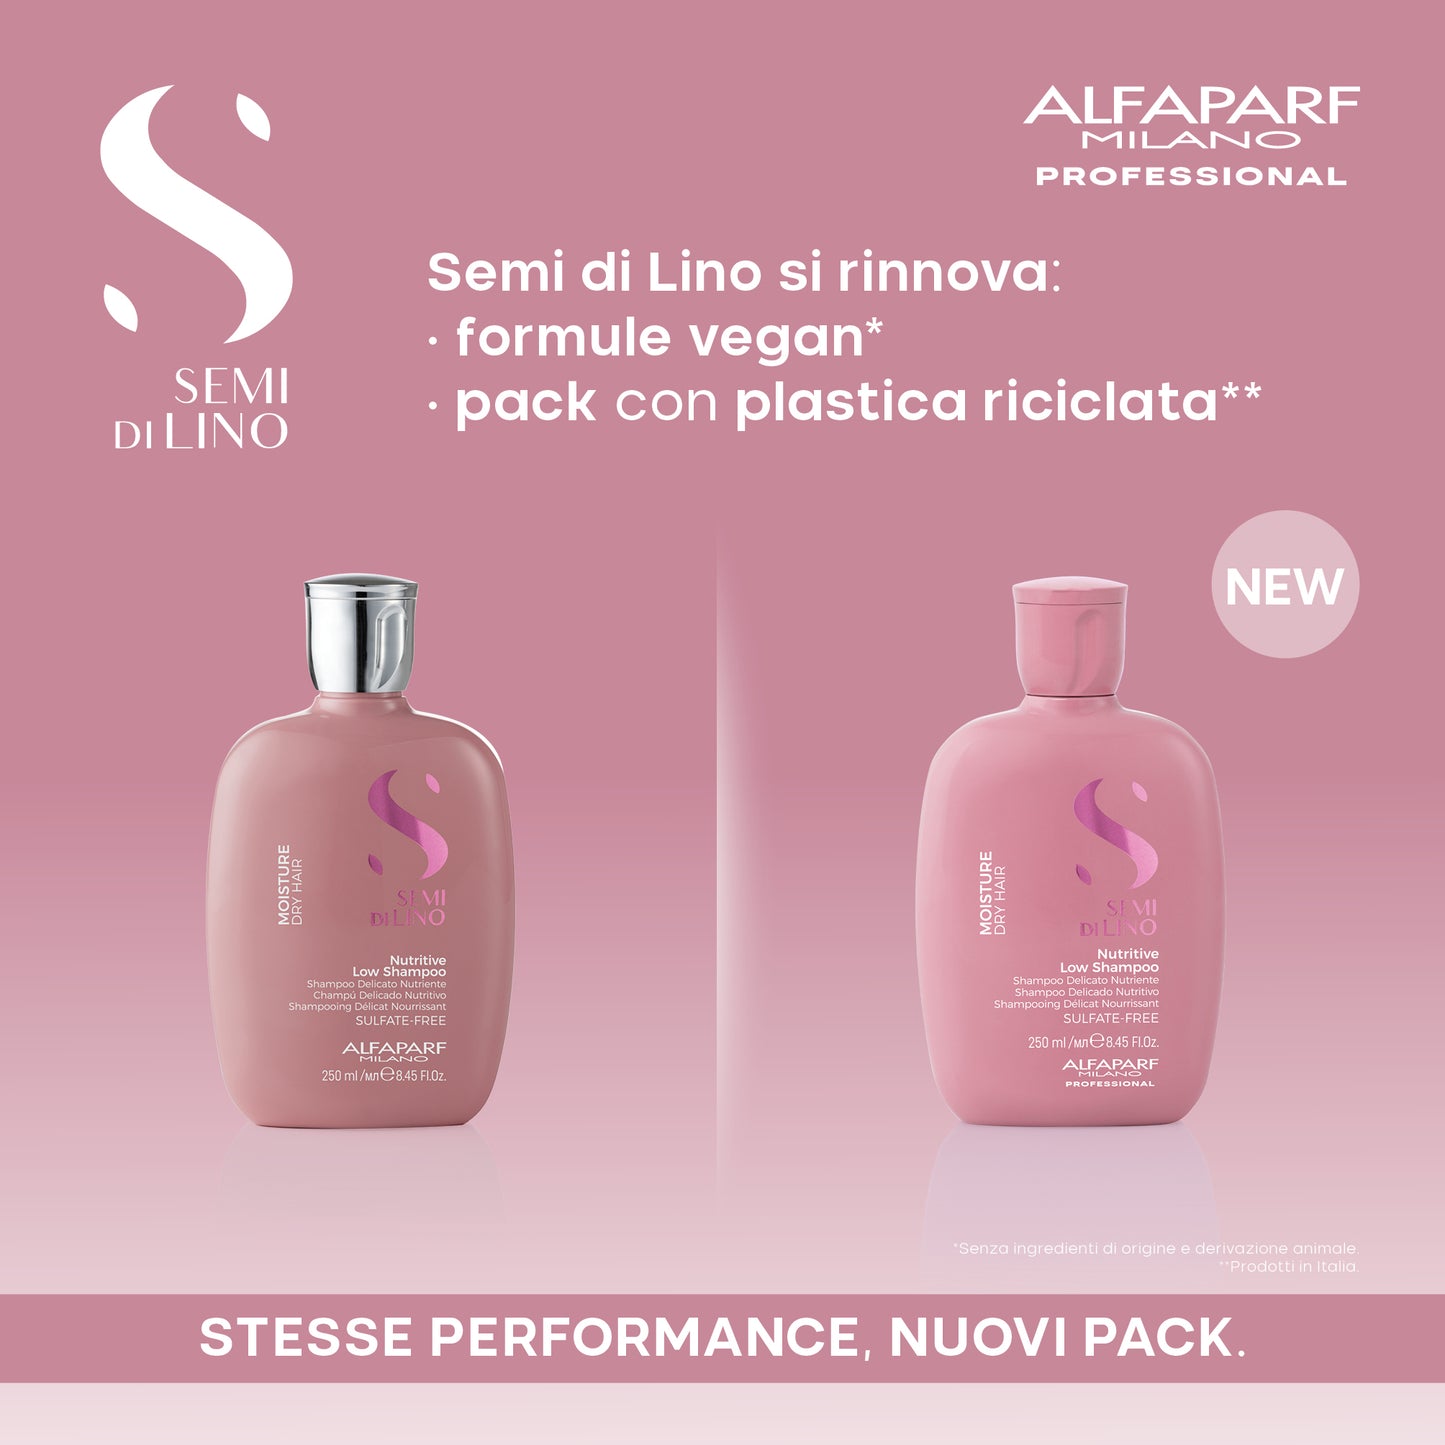 Semi di Lino / Nutritive Low Shampoo